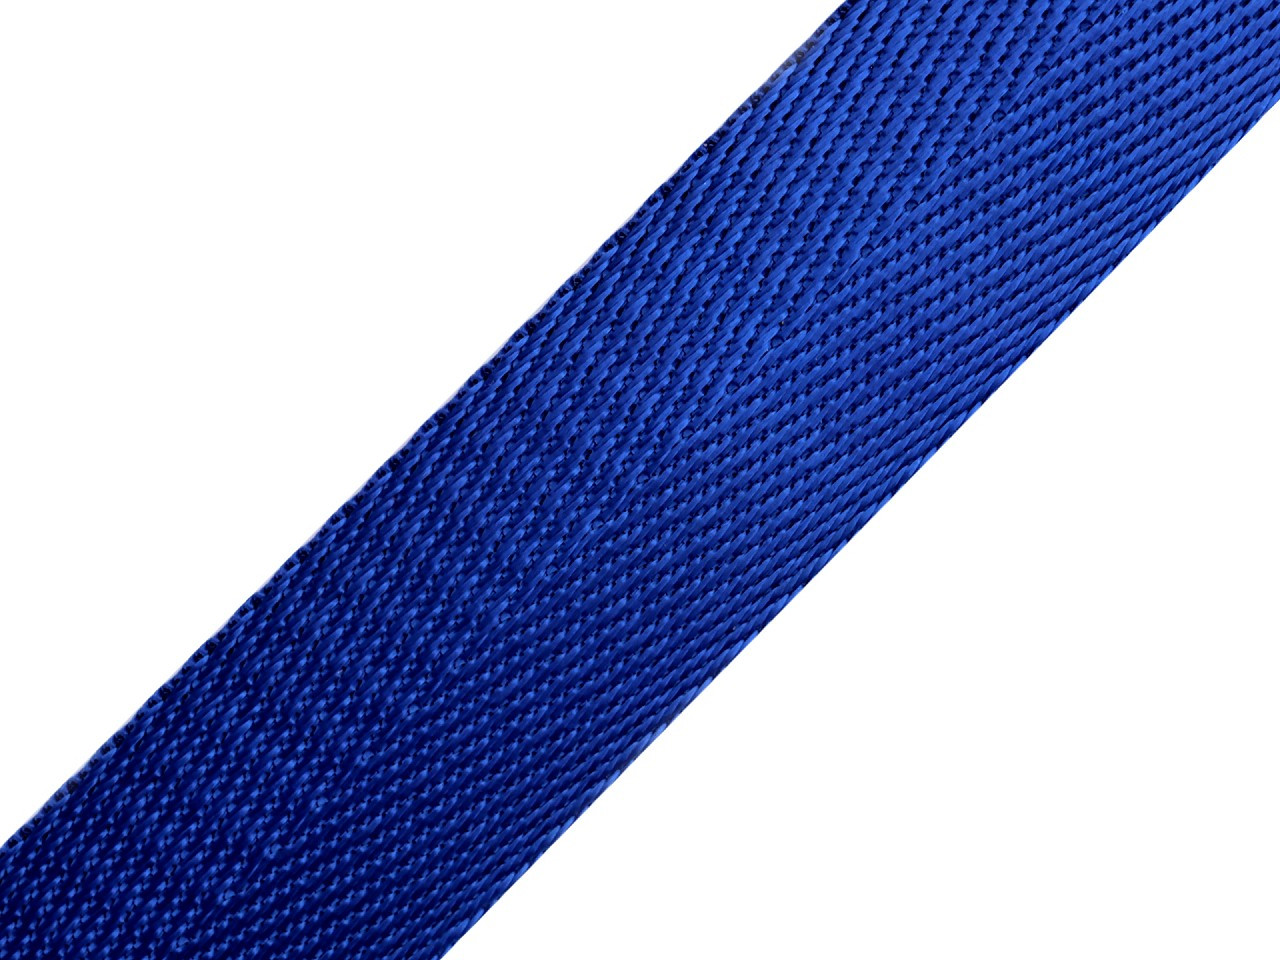 Hladký oboustranný popruh s leskem šíře 25 mm, barva 11 (19) modrá safírová